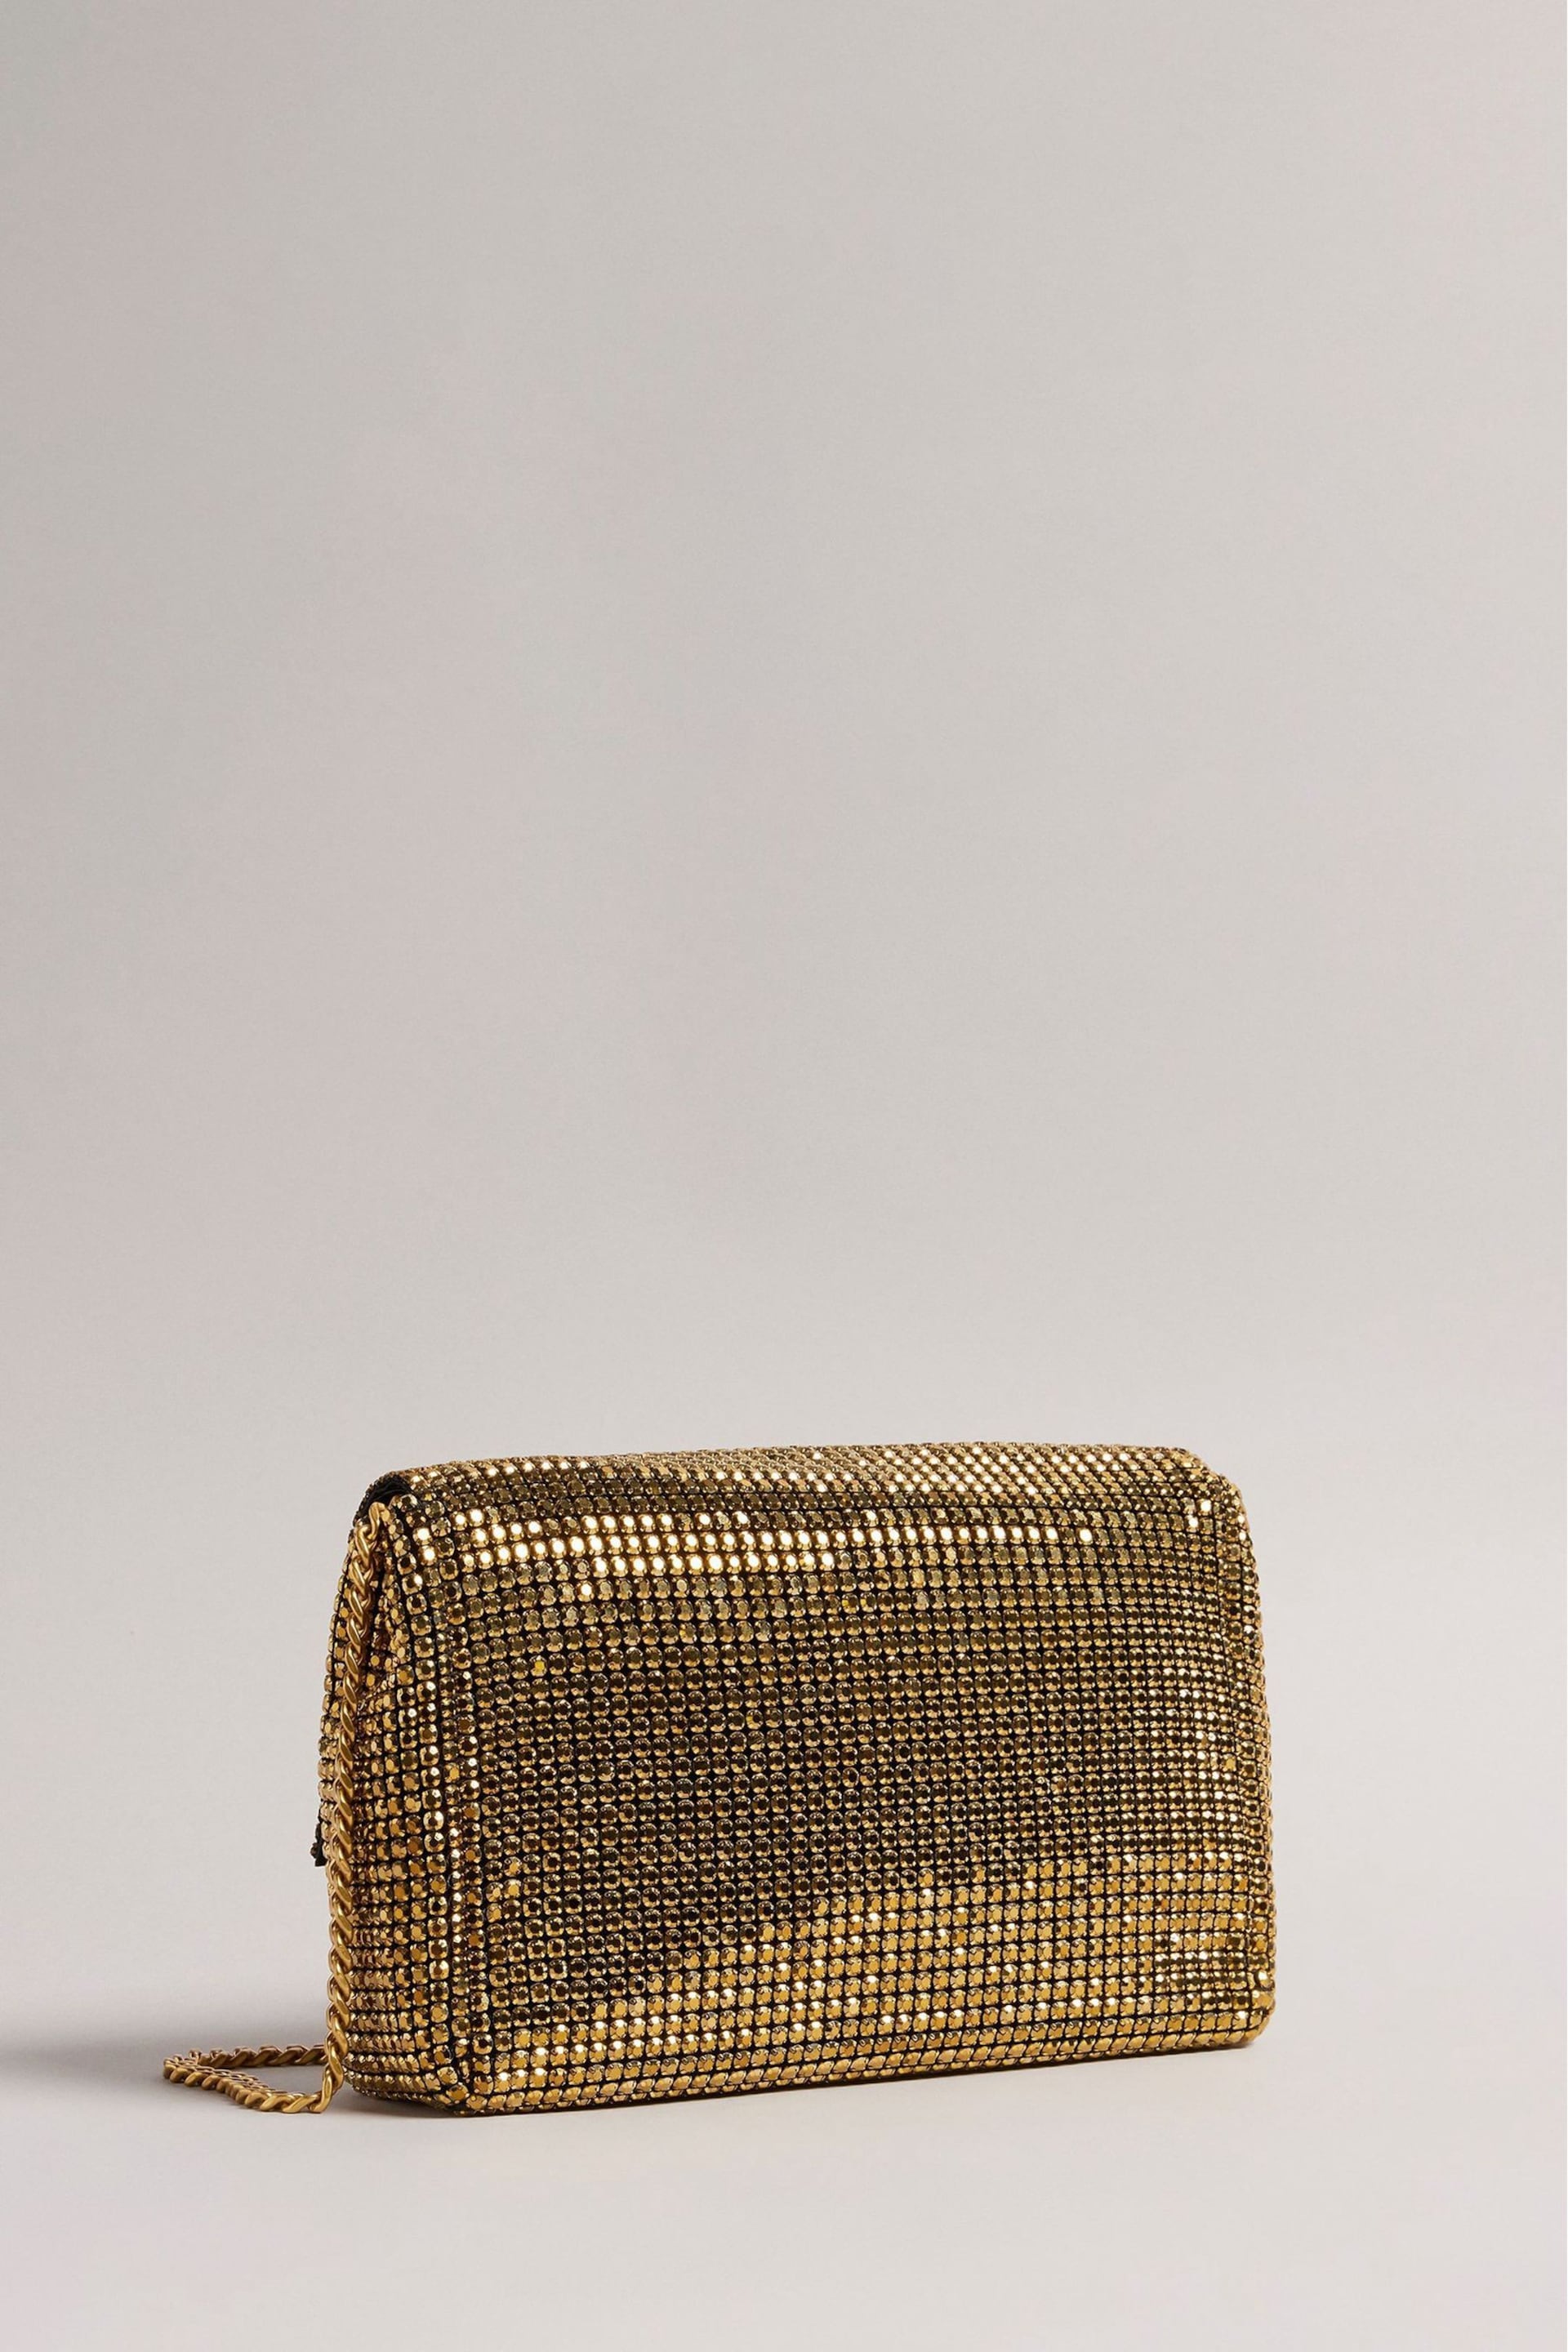 Ted Baker Gold Glitzet Crystal Baguette Clutch Bag - Image 3 of 5